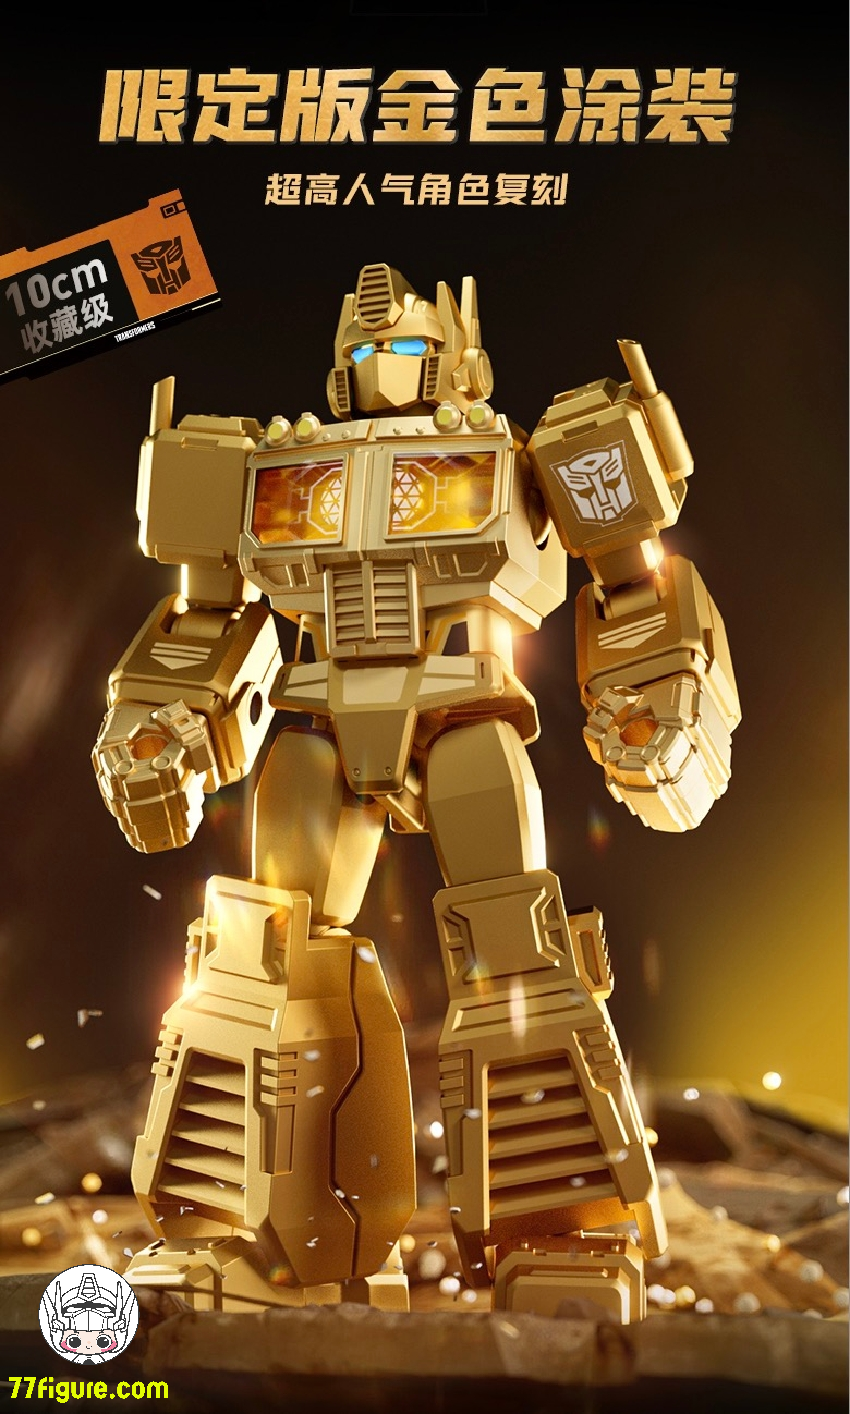 【品切れ】Bloks Transformers ゴールデン ラグーン周年版 5 個セット プラモデル